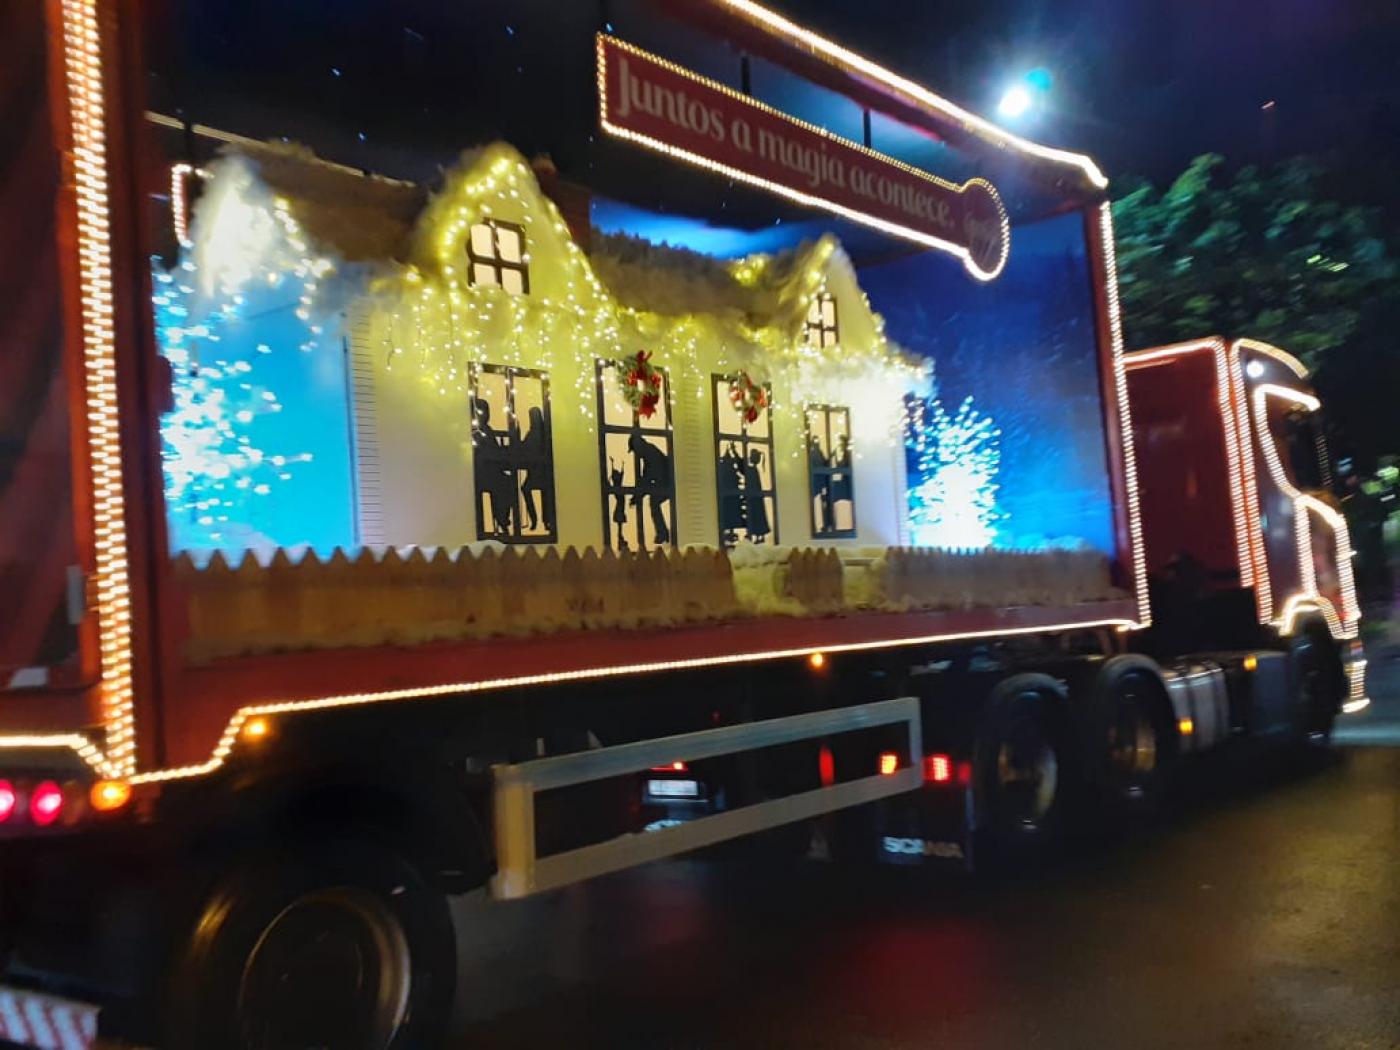 Caminhão de Natal Coca Cola com luz : : Brinquedos e Jogos